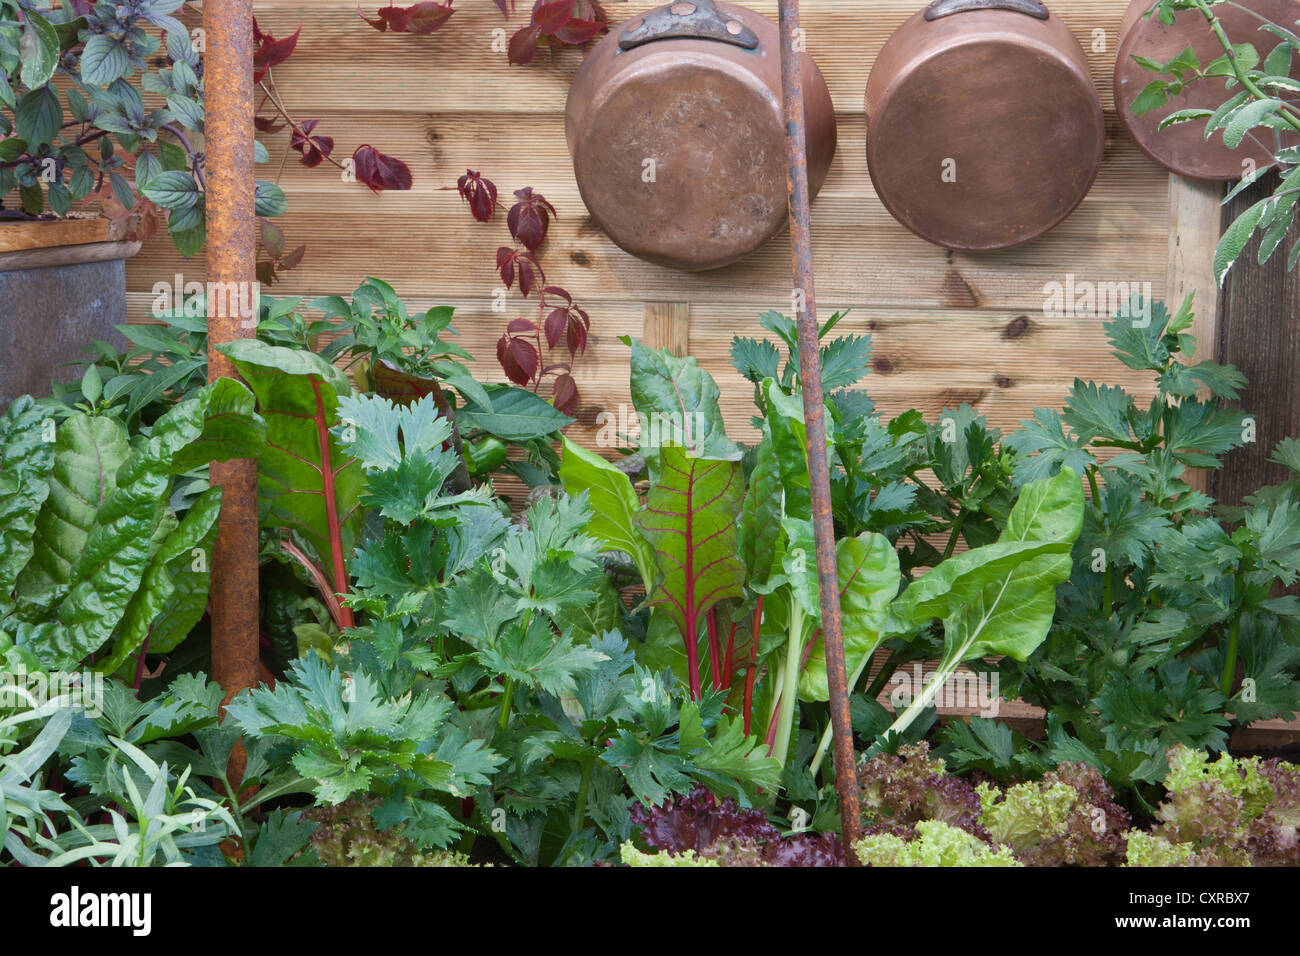 Kleiner Raum Outdoor-Küche Garten mit Salat und Kräuter Pflanzen Salat Petersilie Sellerie und Ruben roten Mangold wächst und Kupfer Töpfe und Pfannen UK Stockfoto